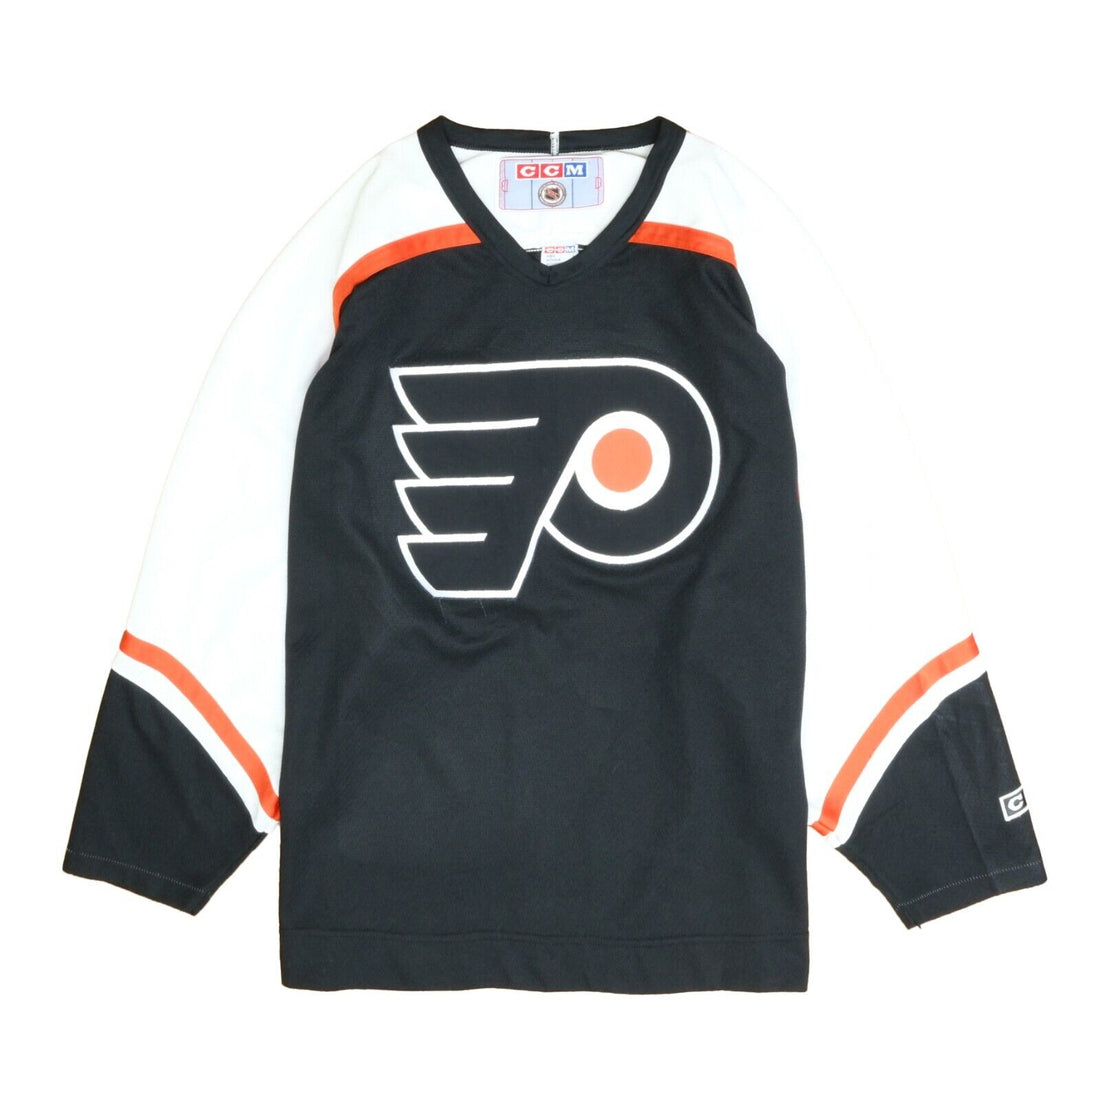 Vintage Philadelphia Flyers CCM Hockey Jersey Size Large 90s NHL